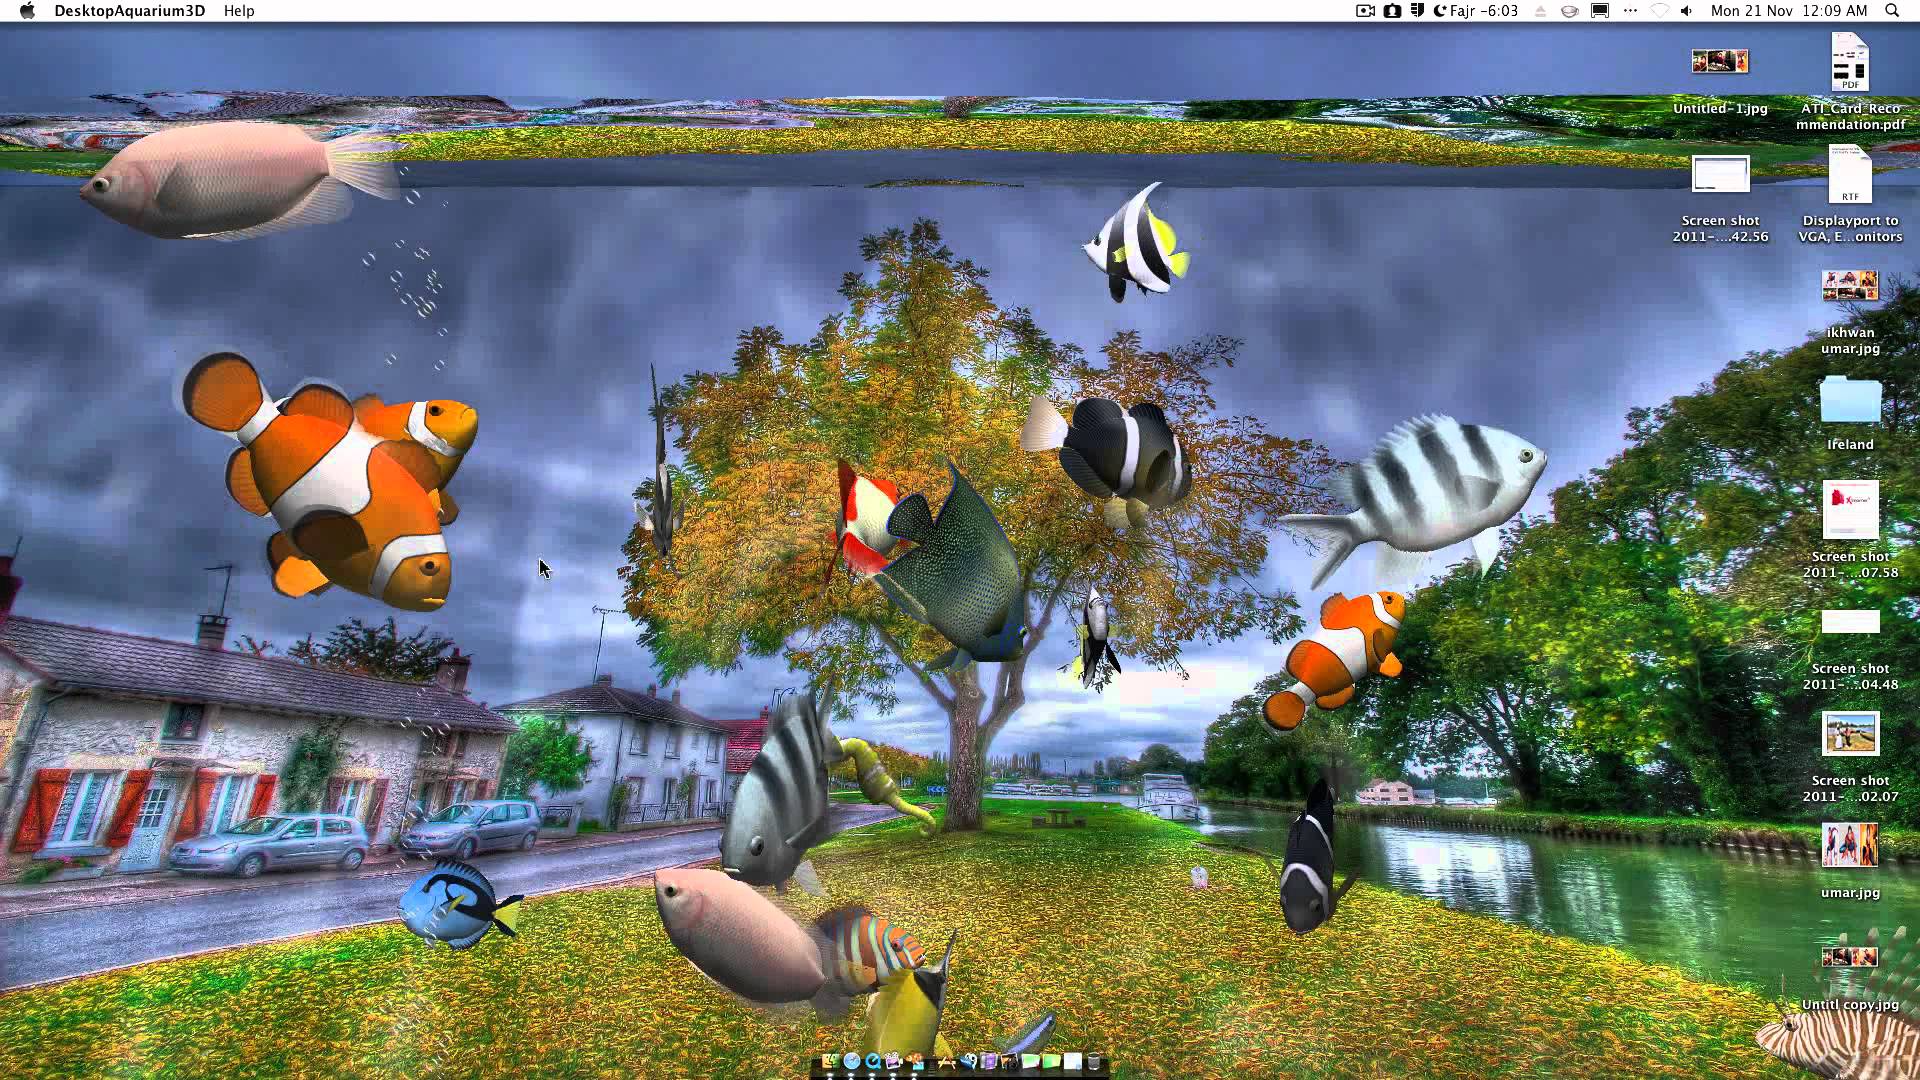 Free download Desktop Aquarium 3D Live Wallpaper on Imac [1920x1080